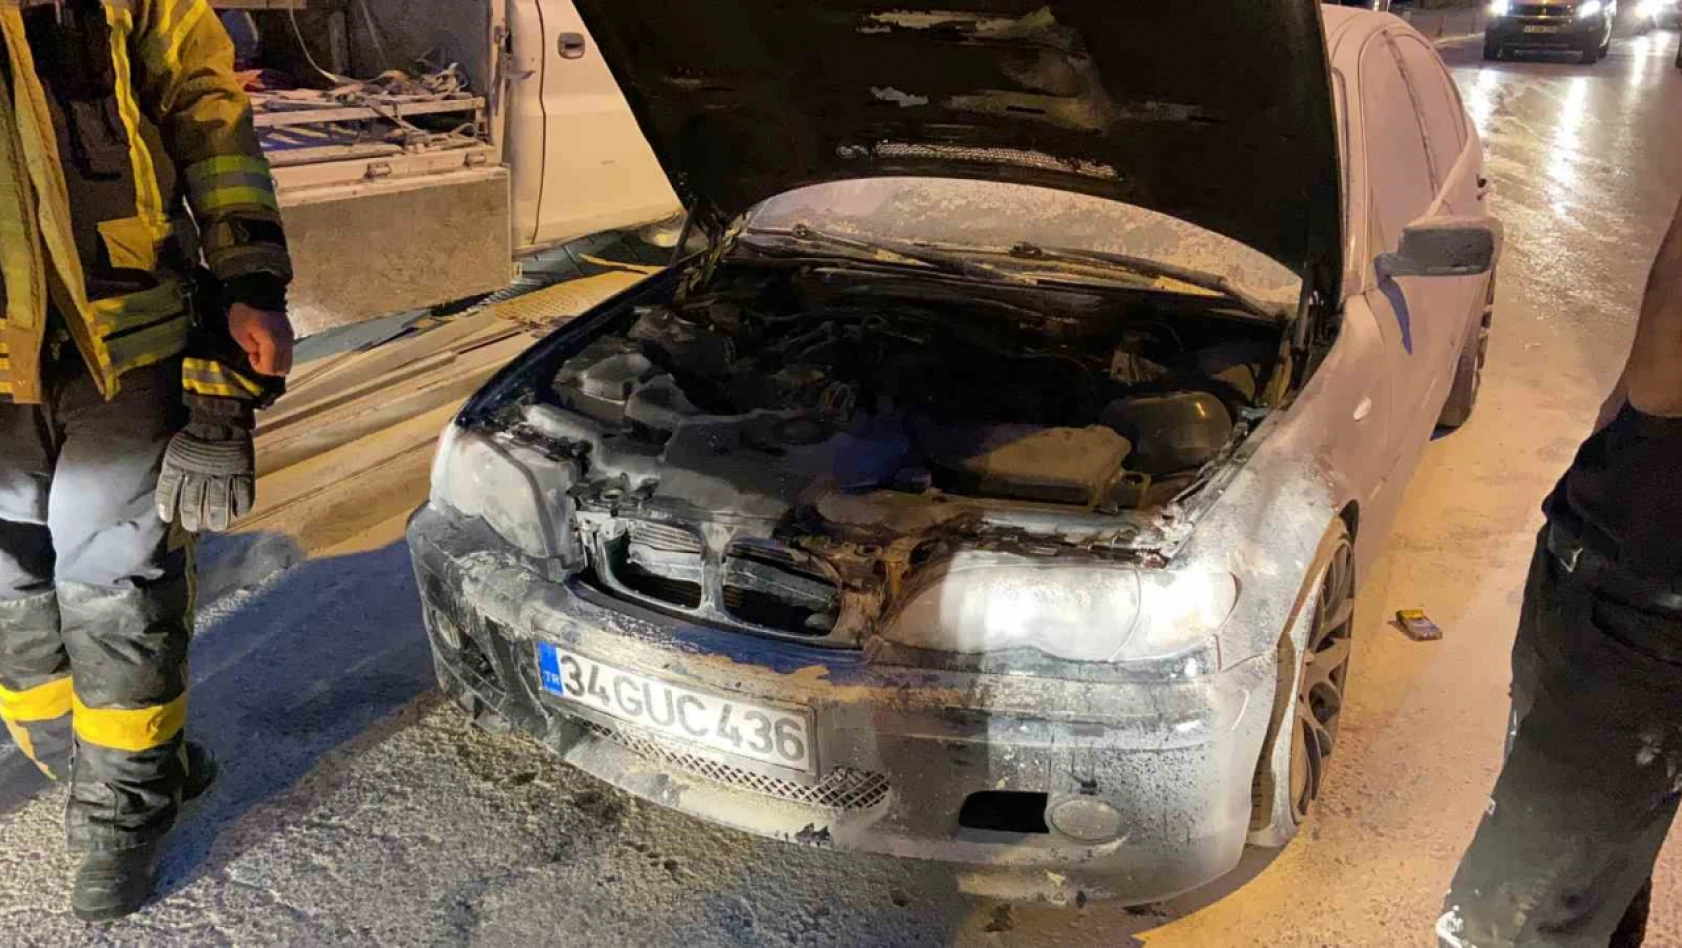 Kocaeli'de seyir halindeki otomobilde yangın